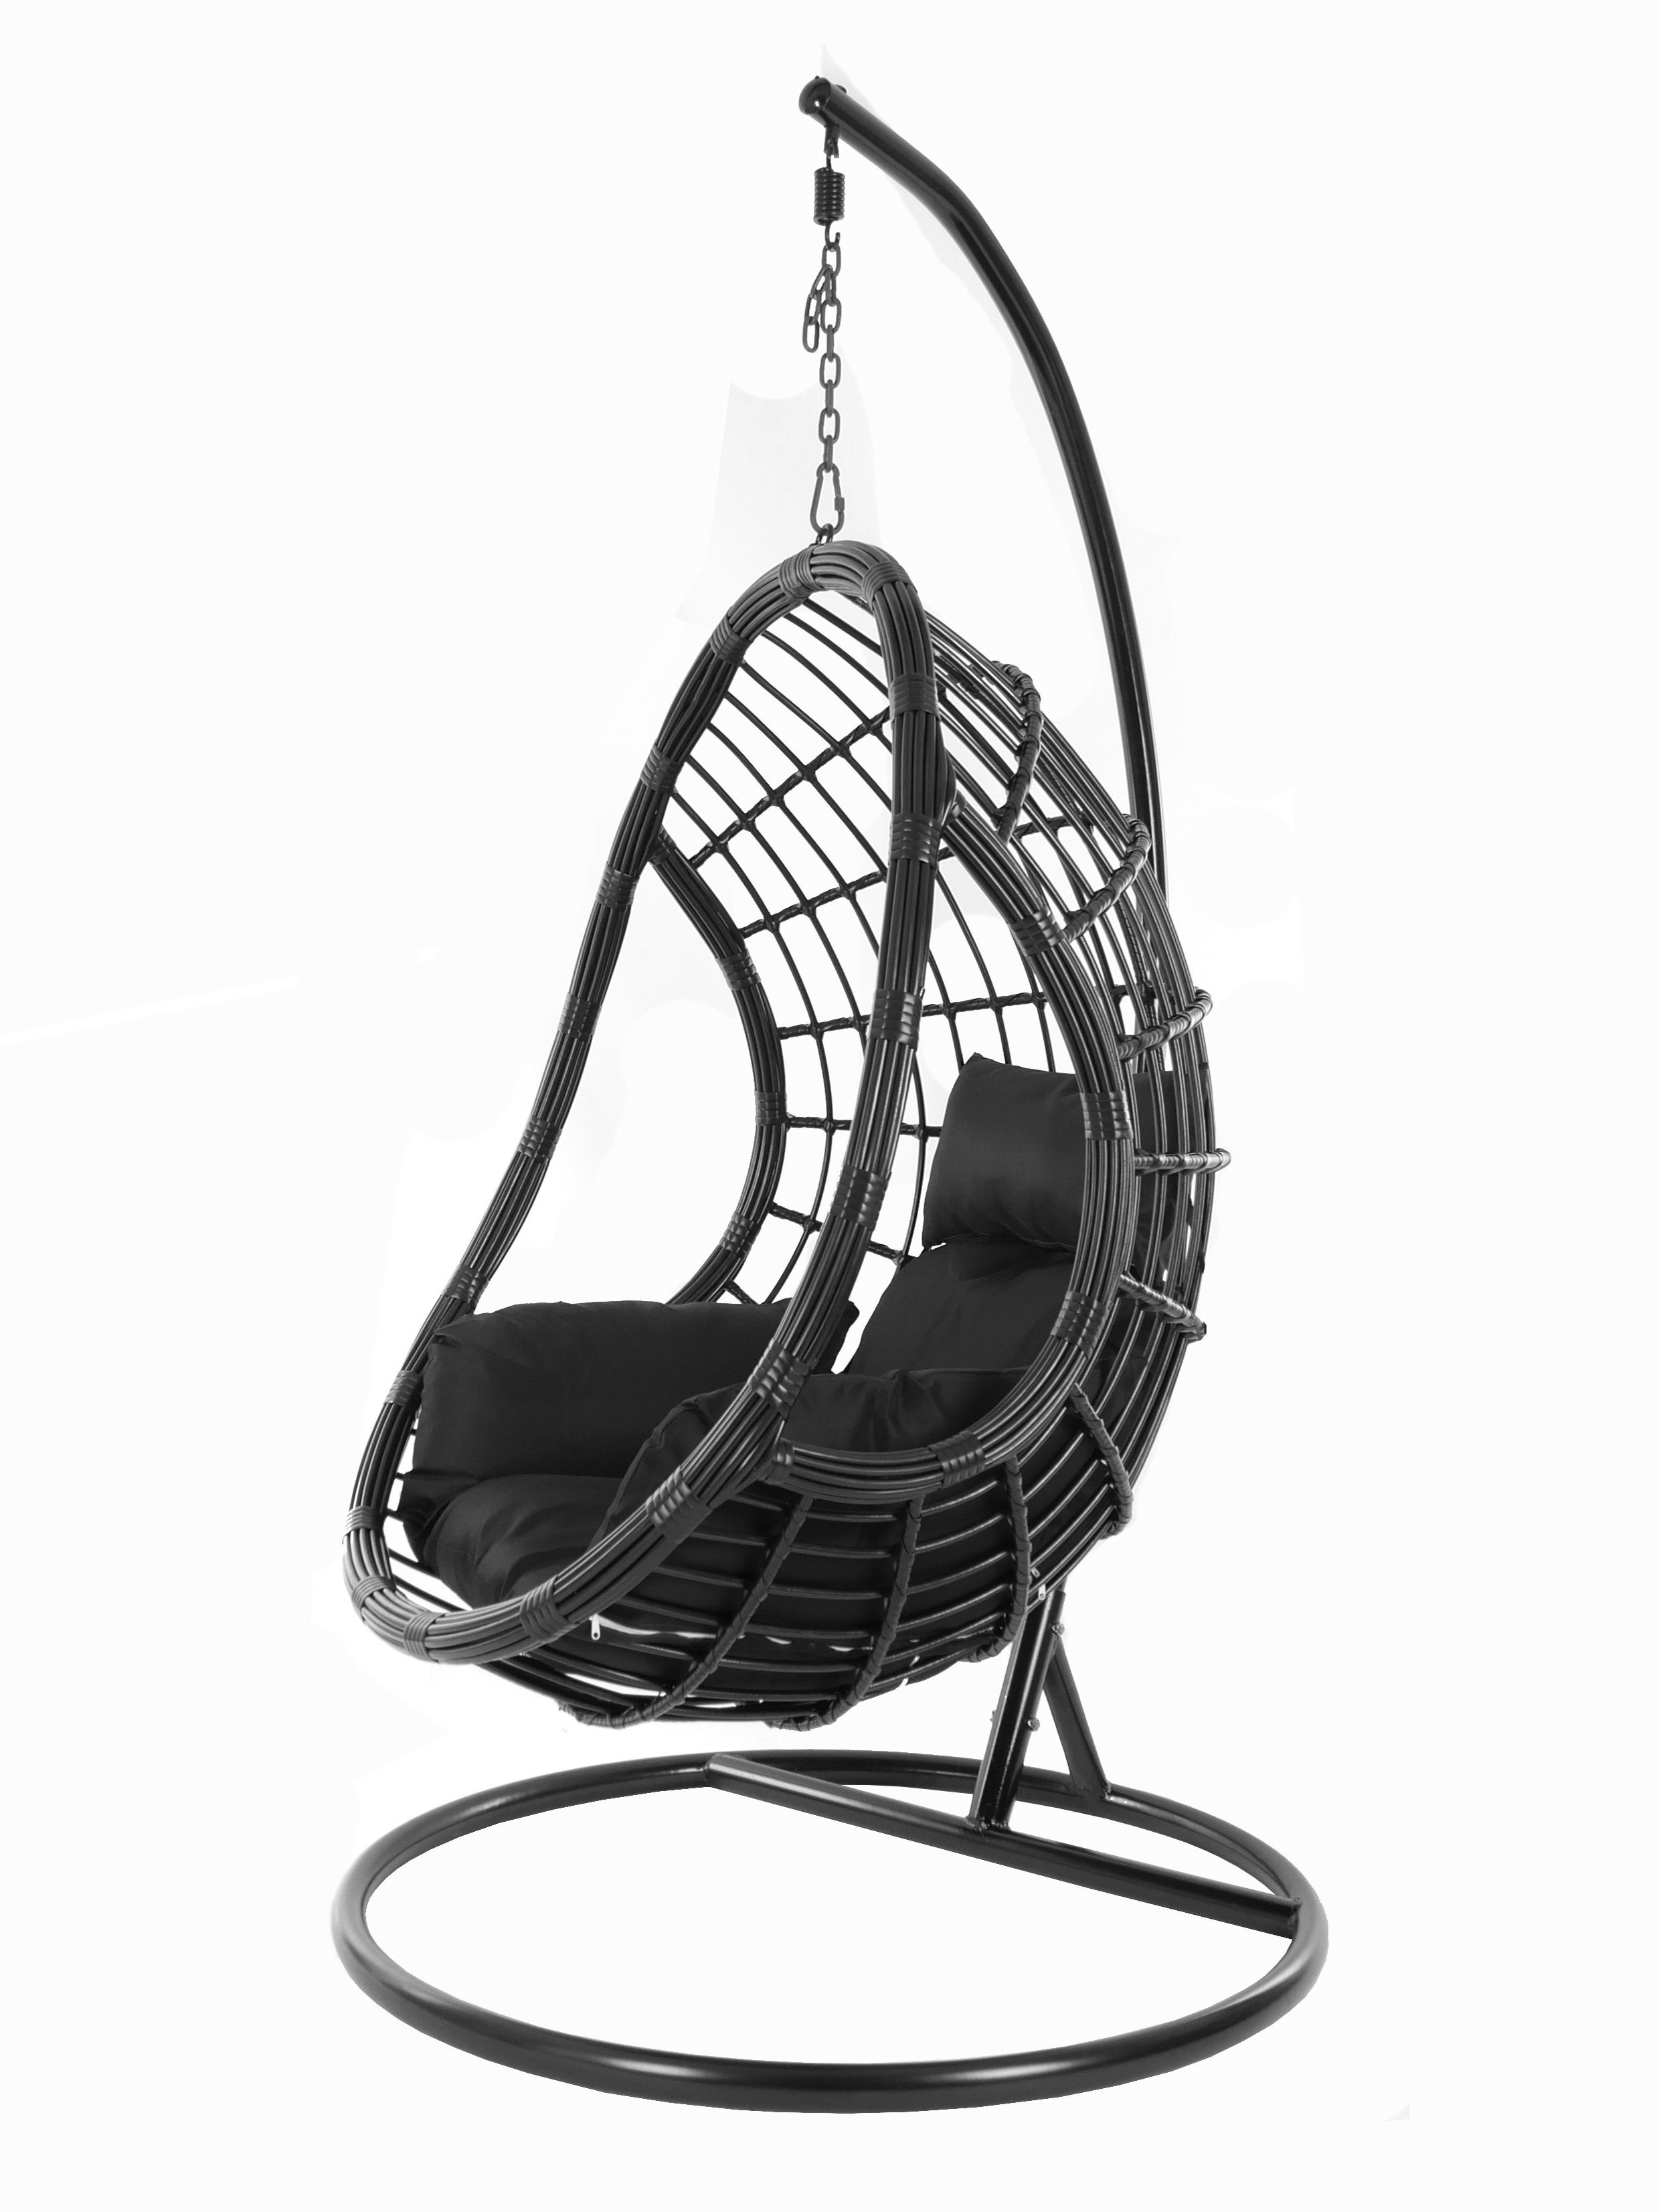 Nest-Kissen Hängesessel Hängesessel Gestell Chair, black, und Kissen, black) (9999 mit schwarz KIDEO PALMANOVA Schwebesessel, Swing